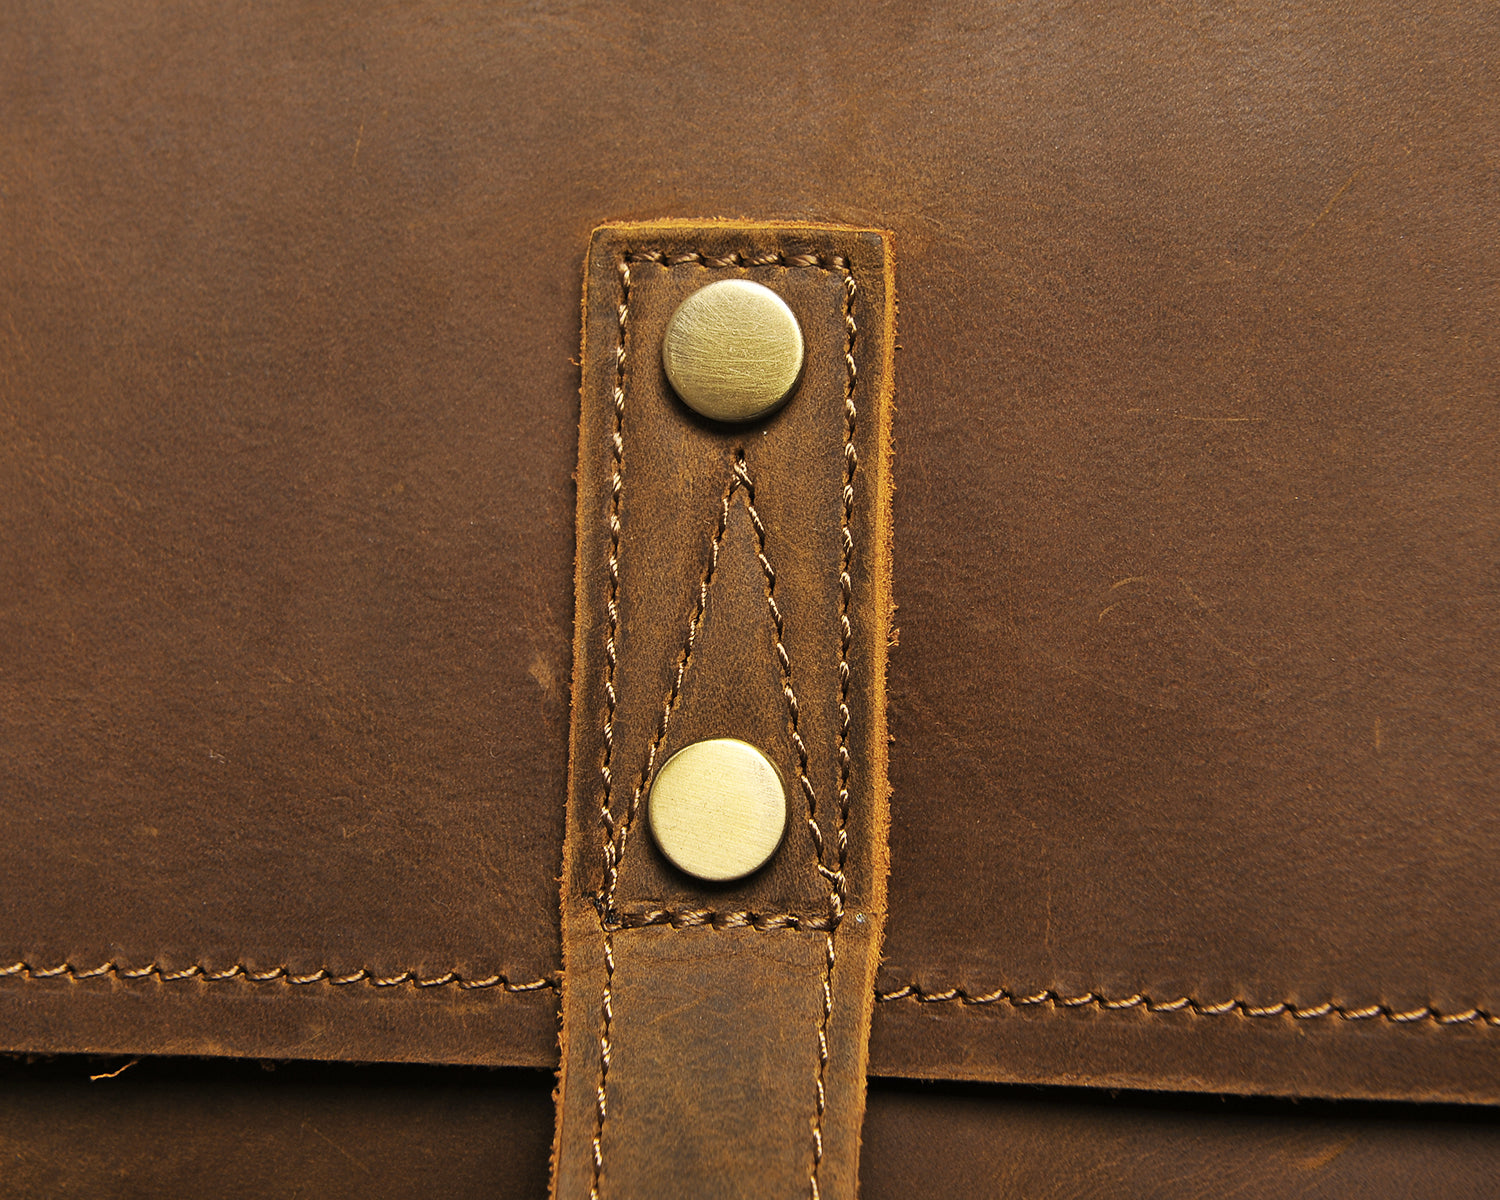 DapperG Chocolate Leather Shoulder Bag